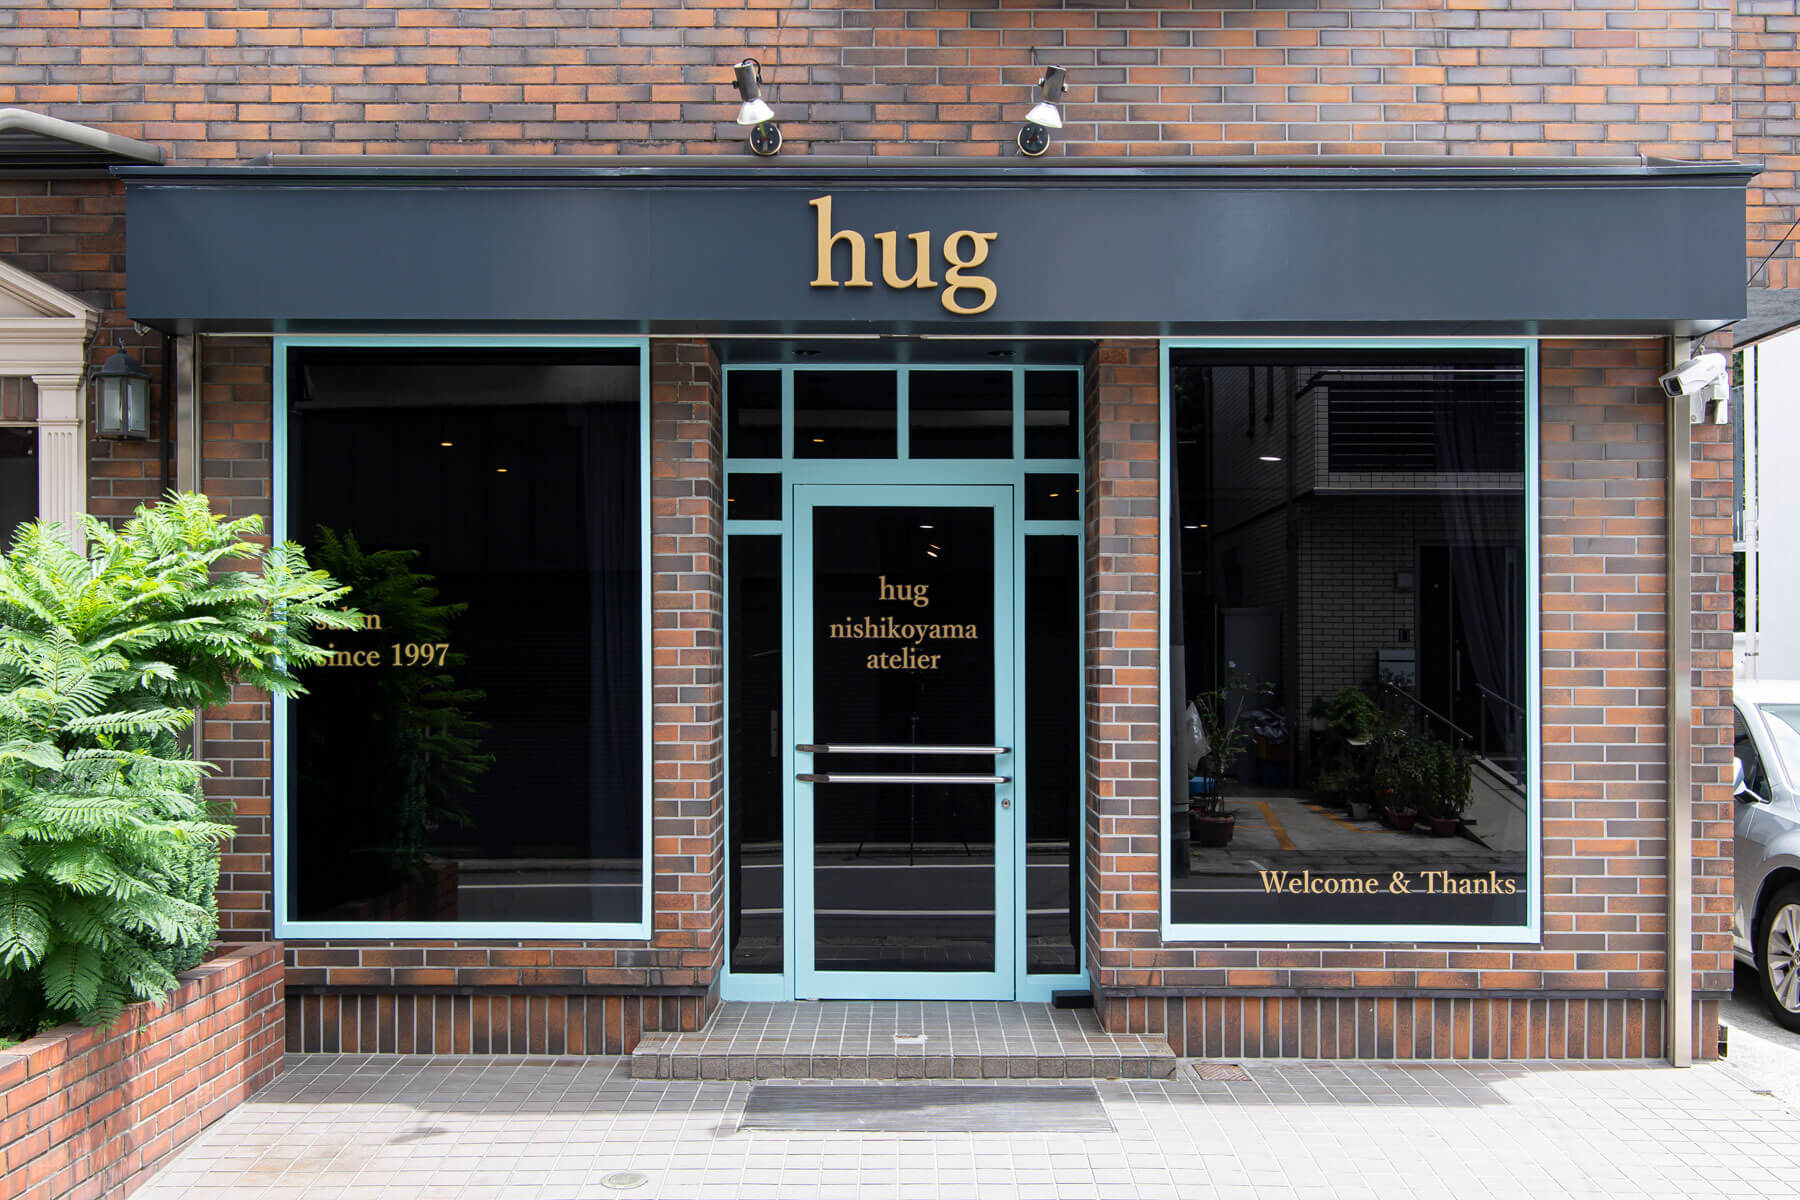 hug nishikoyama atelier／Tokyo